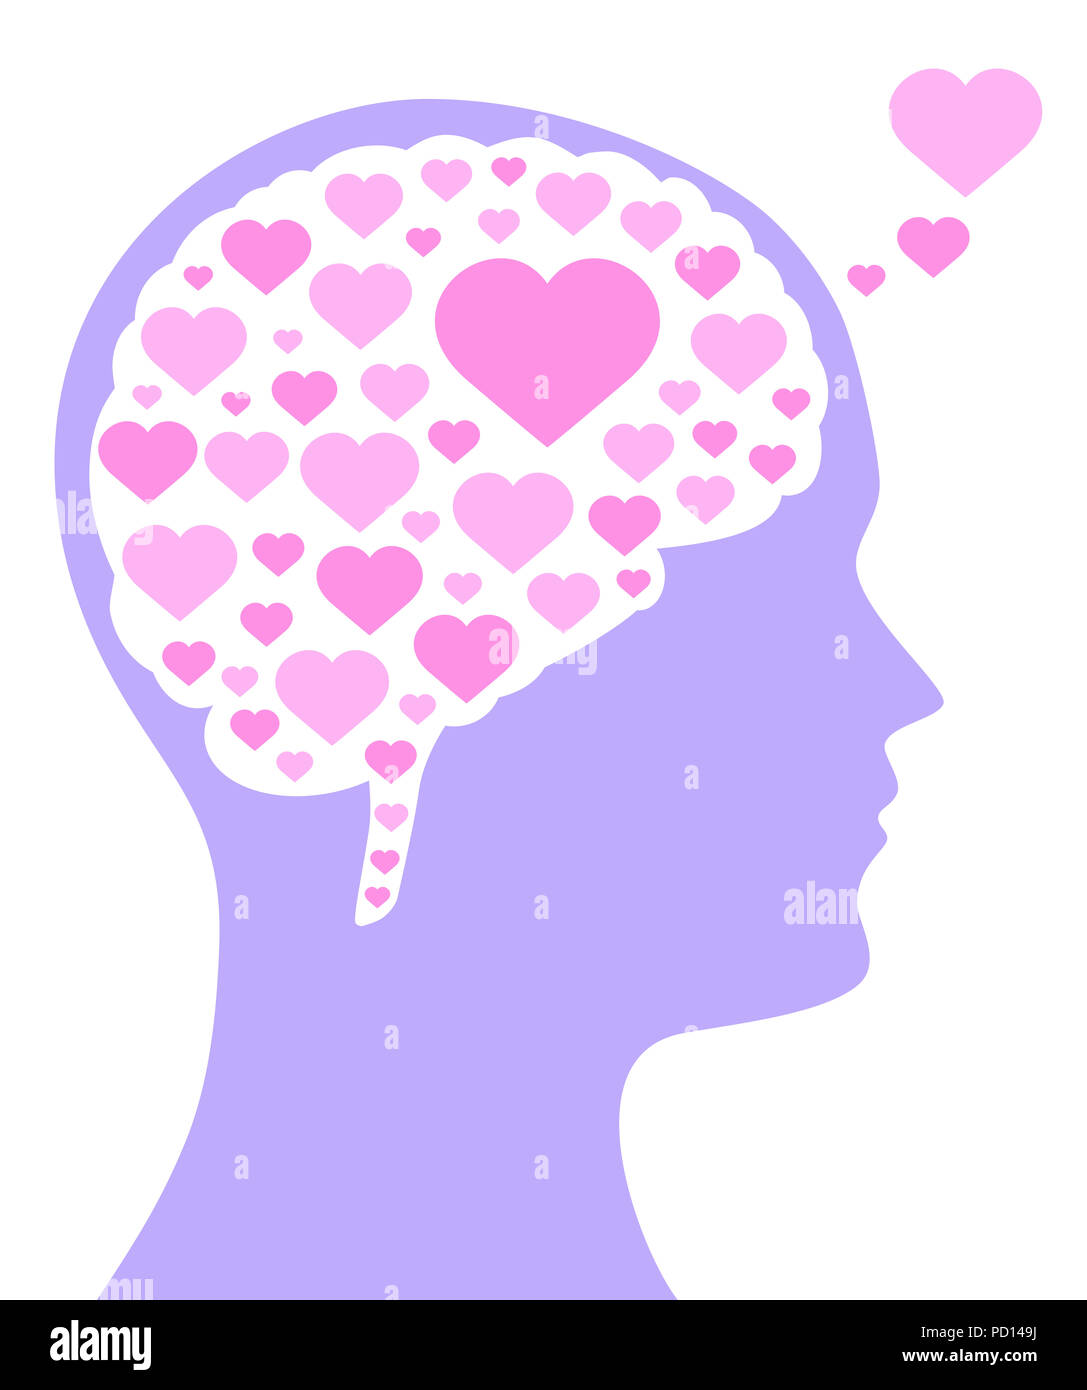 Corazones de color rosa en un cerebro de la forma y en el Purple silueta de una cabeza. Un símbolo para caer o ser en el amor, el gusto, la emoción y el afecto. Foto de stock